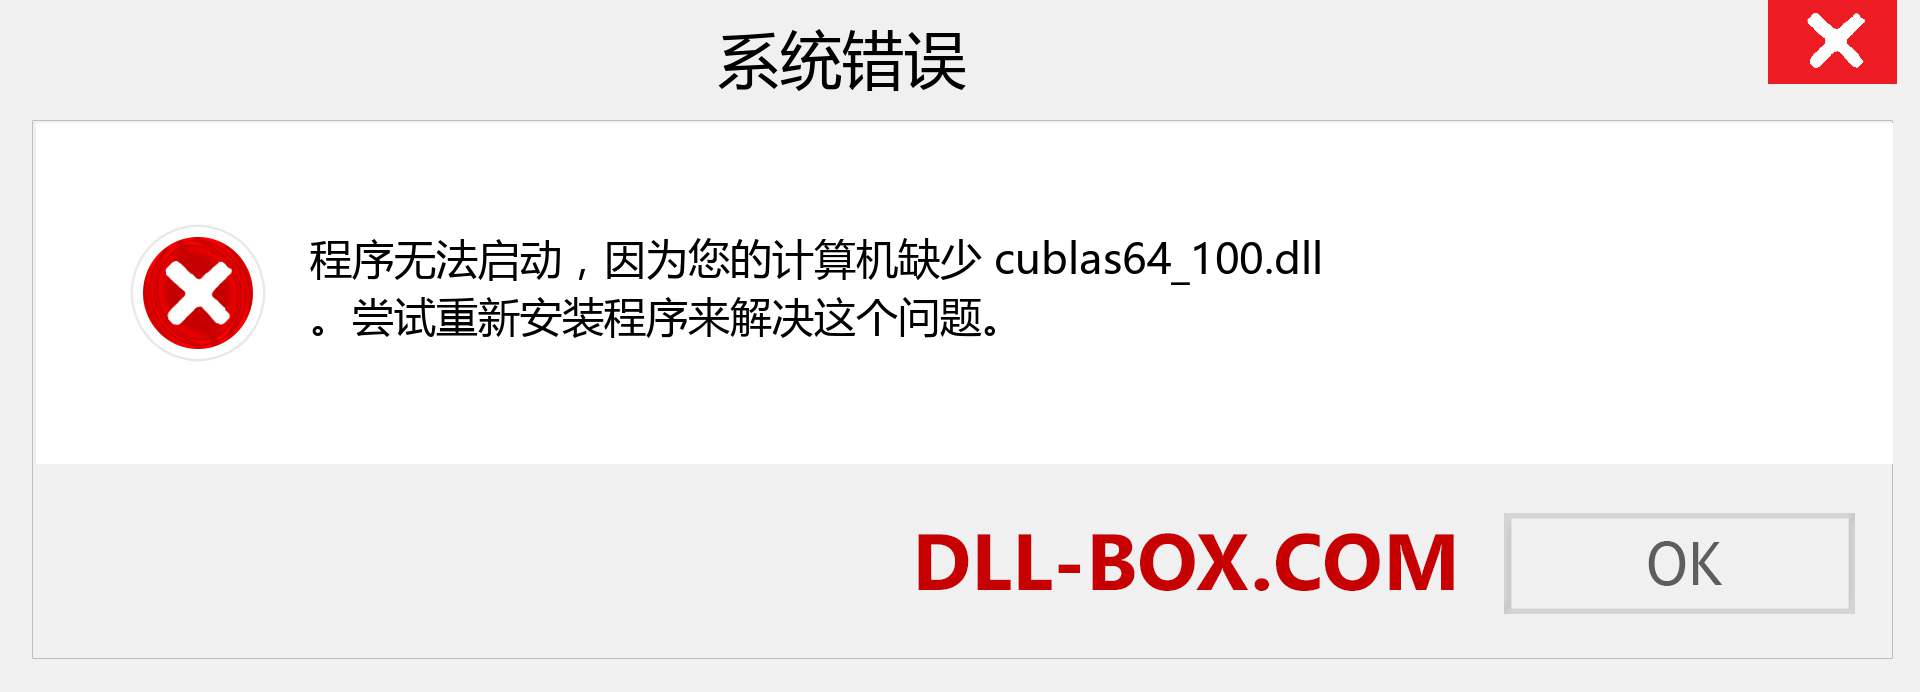 cublas64_100.dll 文件丢失？。 适用于 Windows 7、8、10 的下载 - 修复 Windows、照片、图像上的 cublas64_100 dll 丢失错误